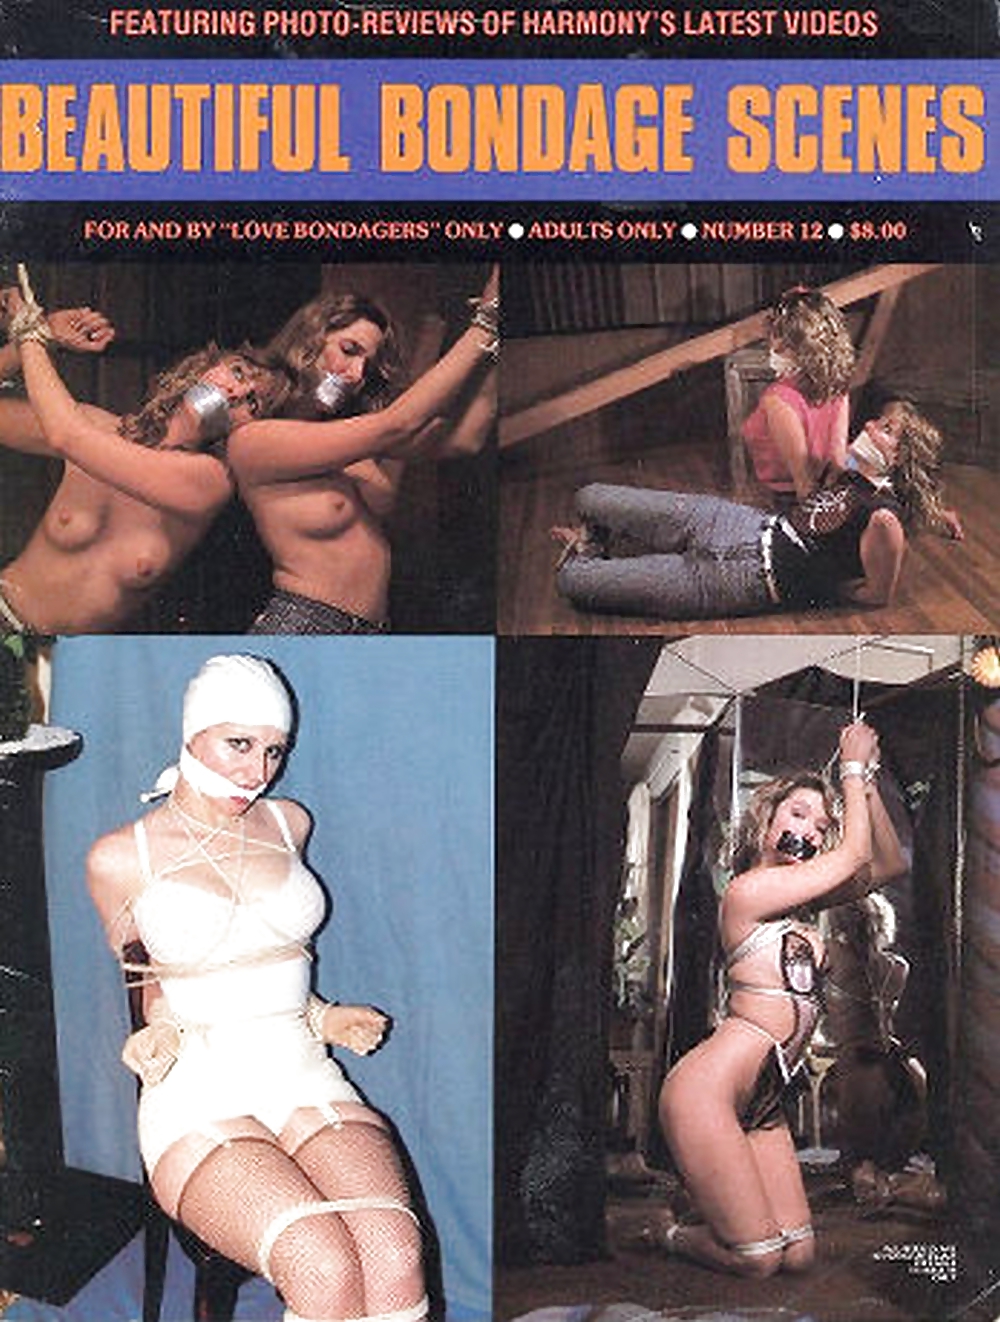 Le mie riviste bondage d'epoca (copertine)
 #22184407